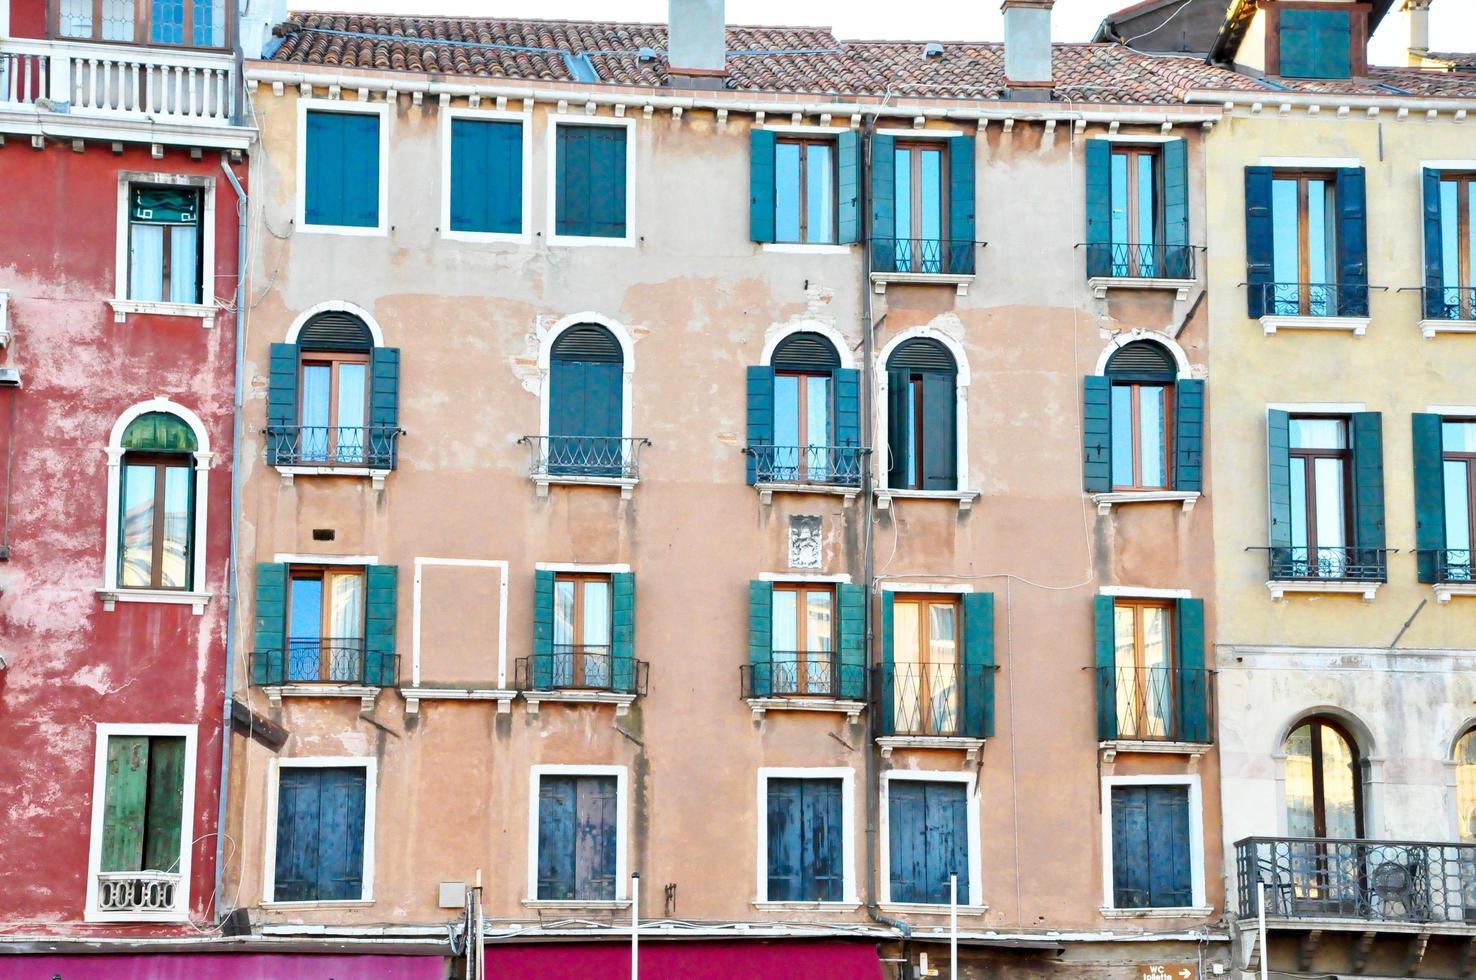 Venise, Italie. place de venise classique avec des bâtiments typiques et des fenêtres colorées photo